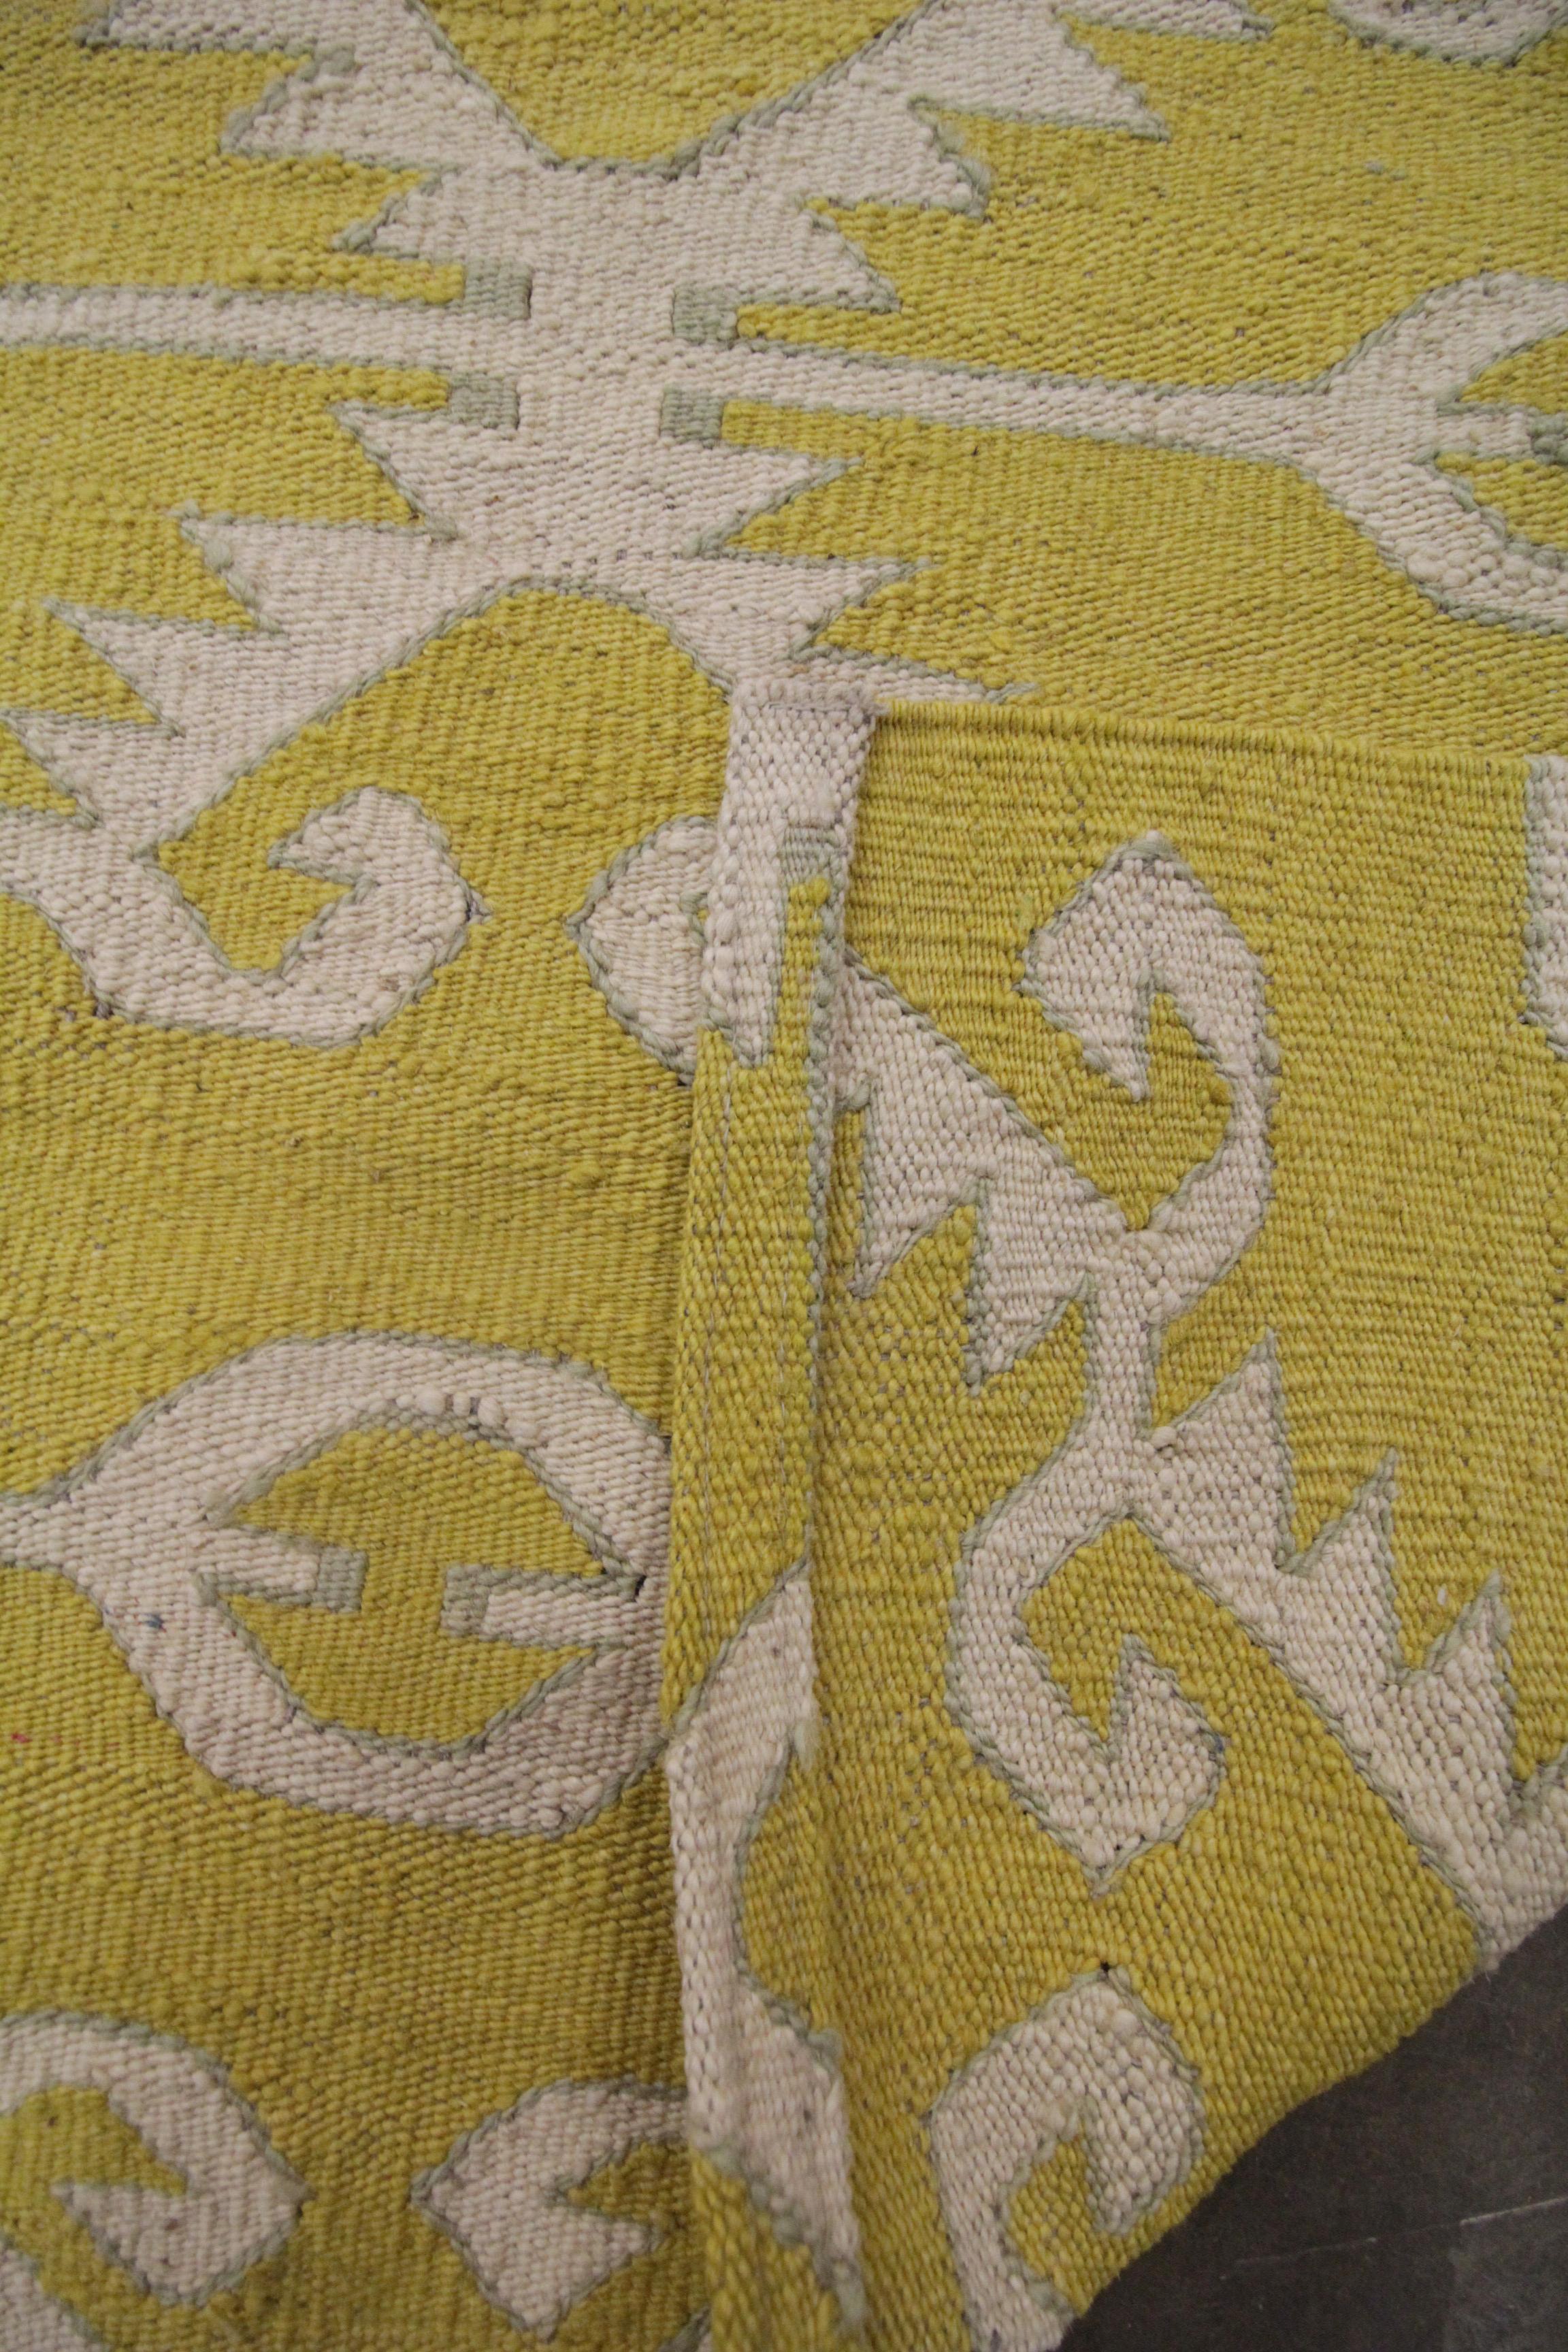 Afghan Modern Kilim Flat Handmade Carpet Geometric Kilim Rug Wool Yellow Rug